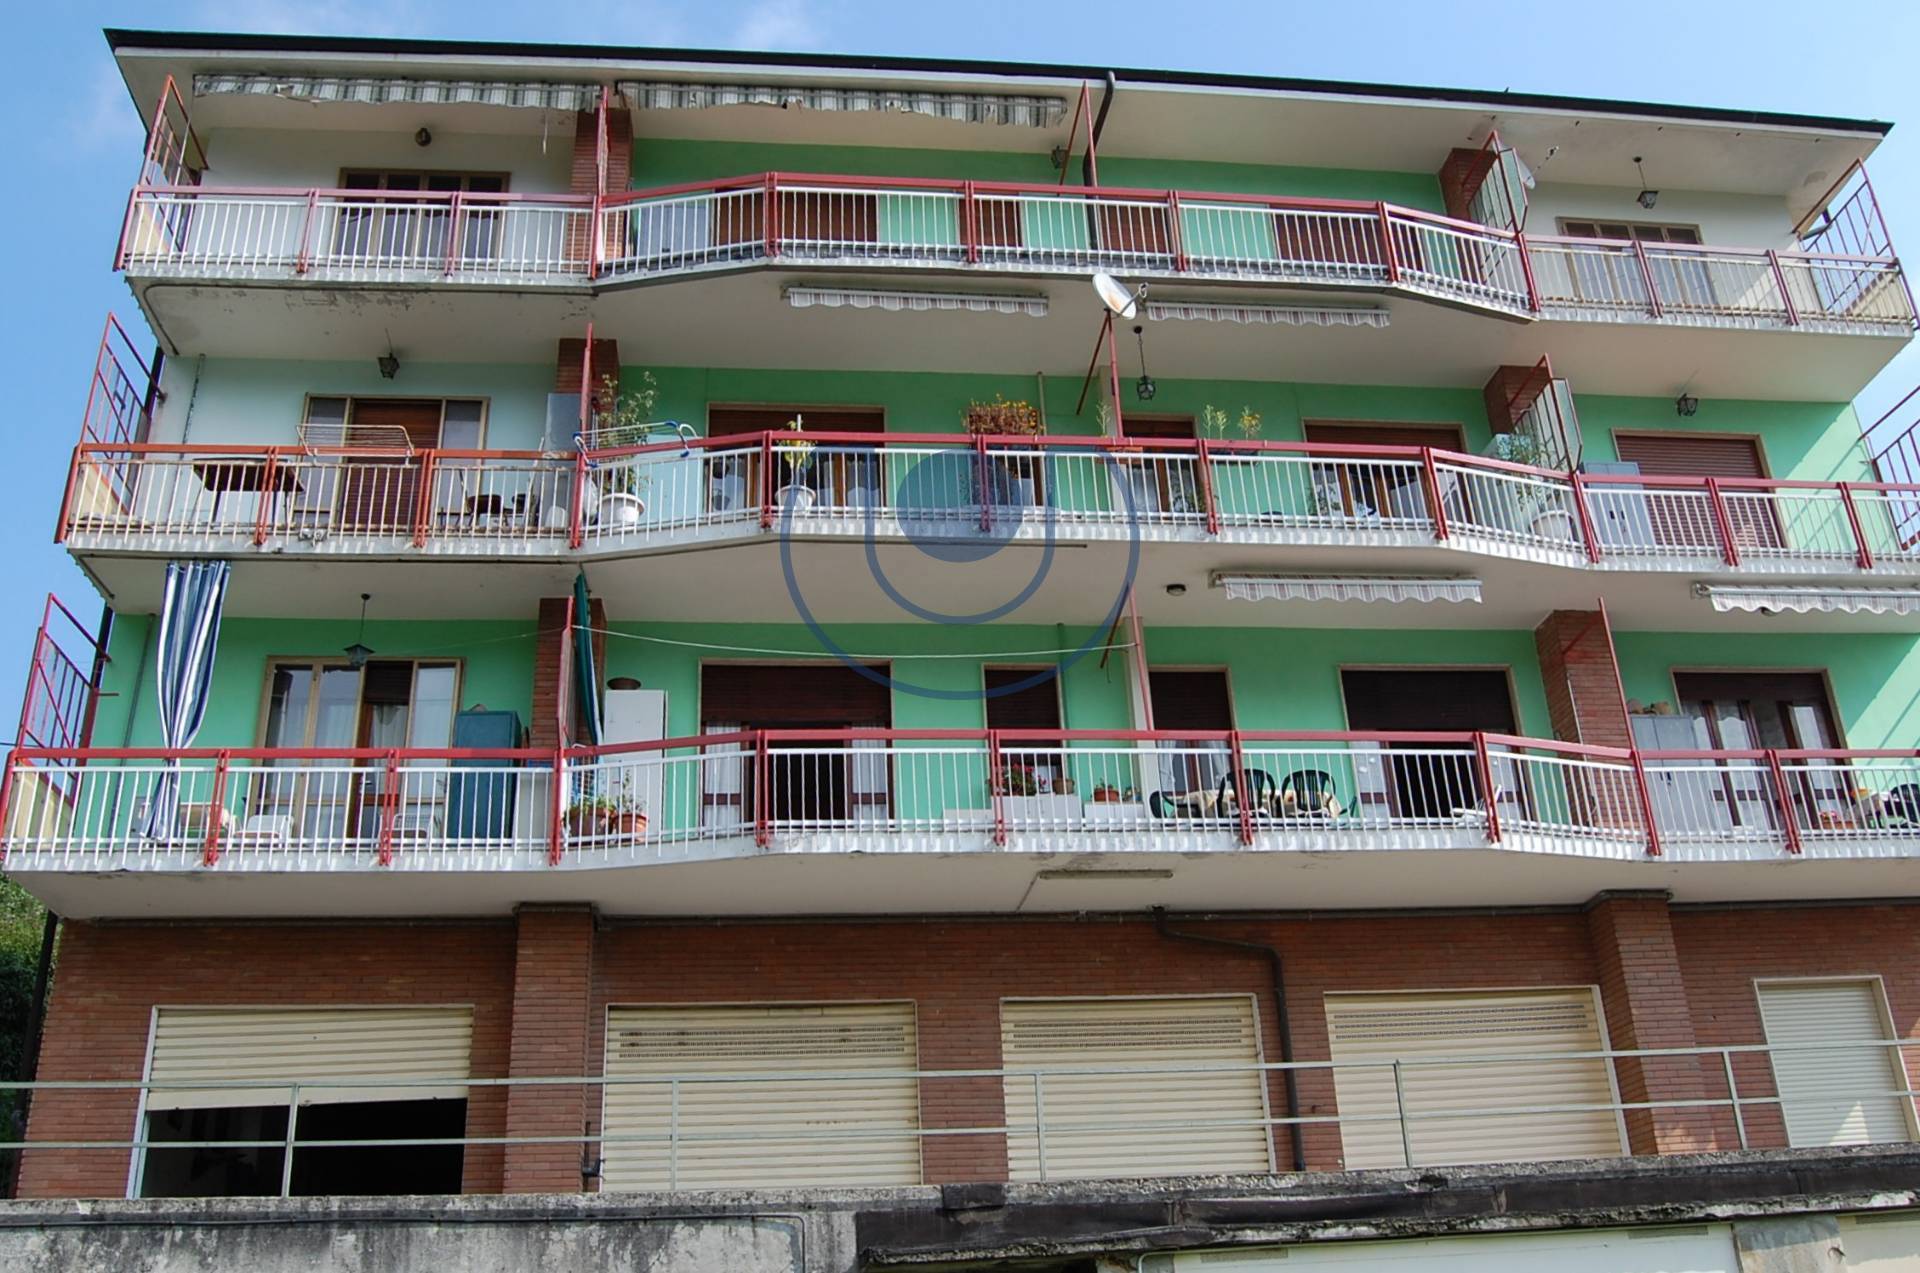 Appartamento in vendita a Coazze, 6 locali, zona Località: Semicentrale, prezzo € 45.000 | PortaleAgenzieImmobiliari.it